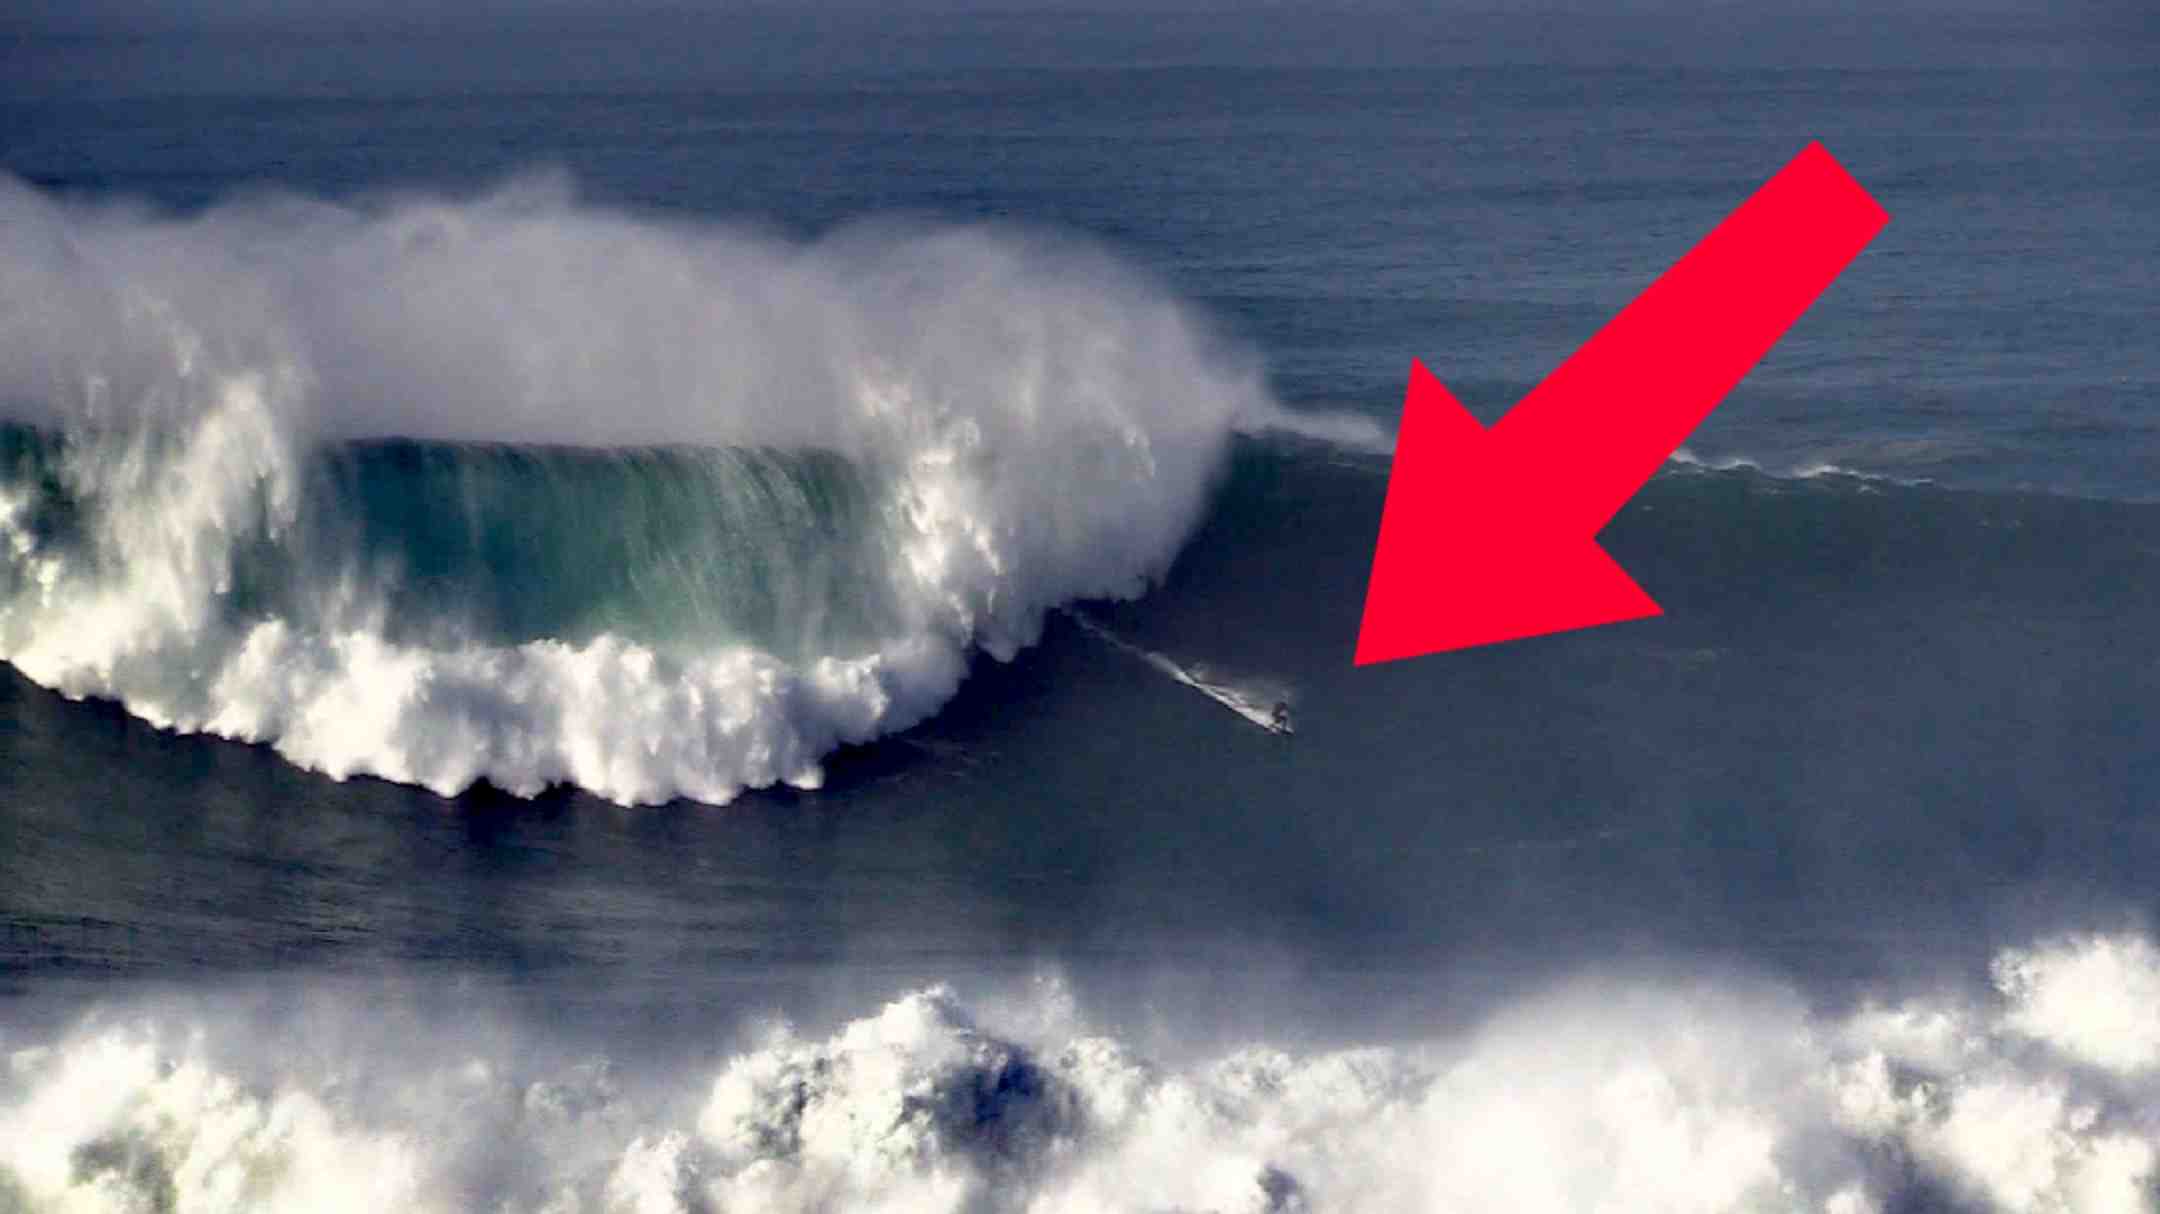 Quelle est la plus grosse vague à Nazaré ?